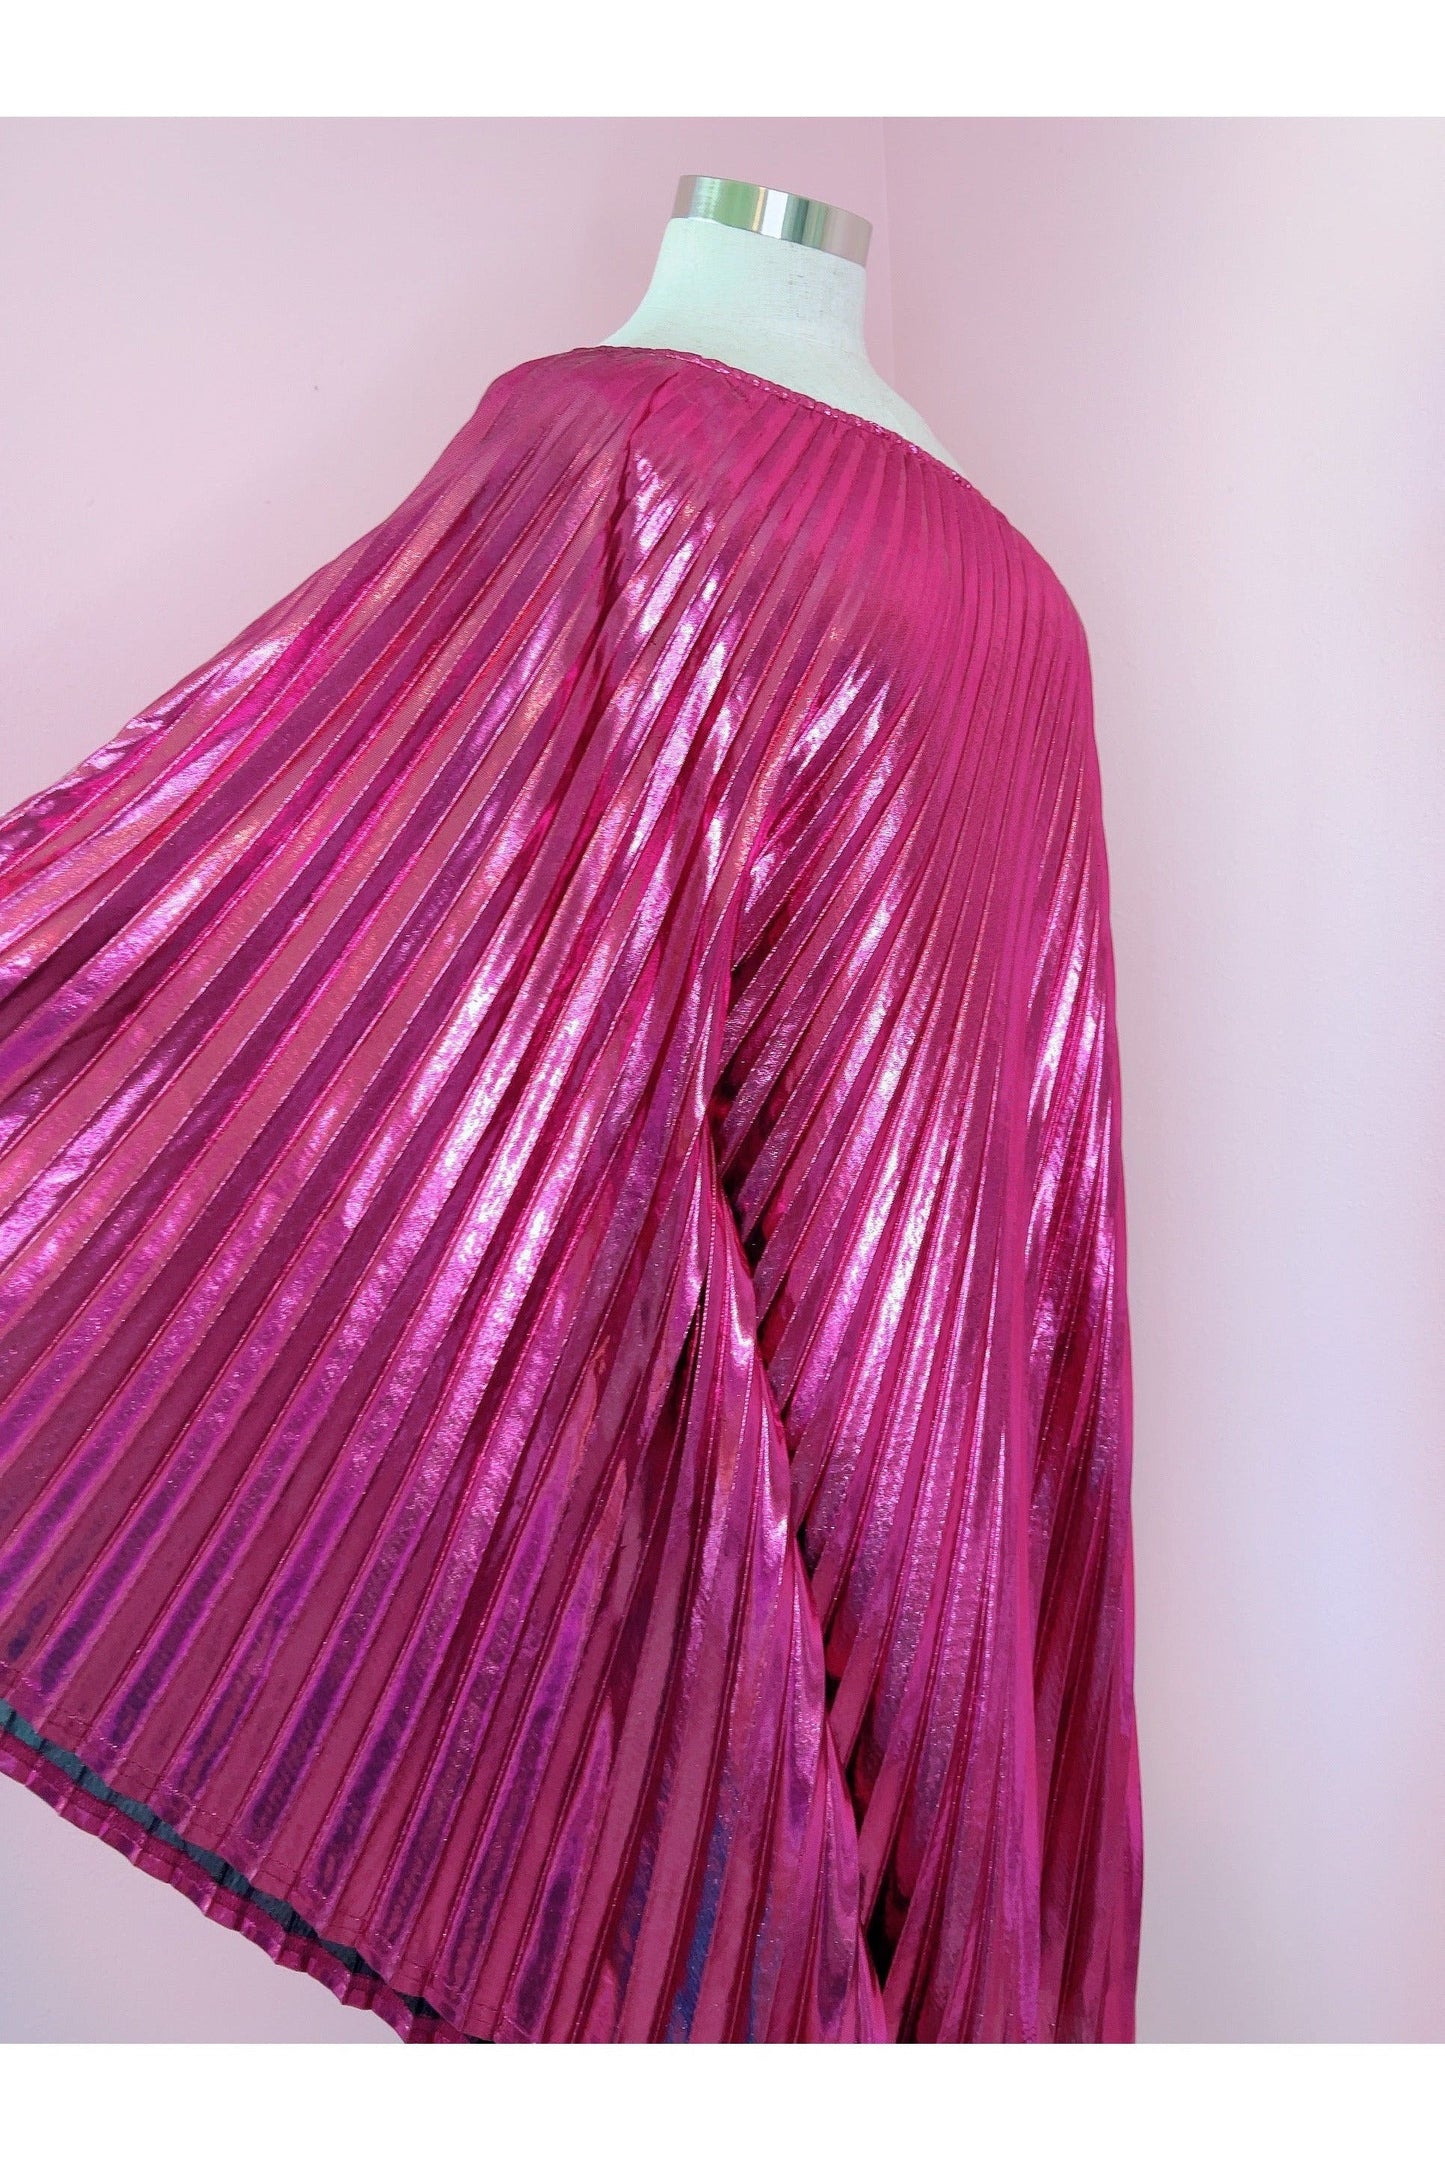 Audrey K Designs Vibrant Pink Metallic One Shoulder Designer Dress